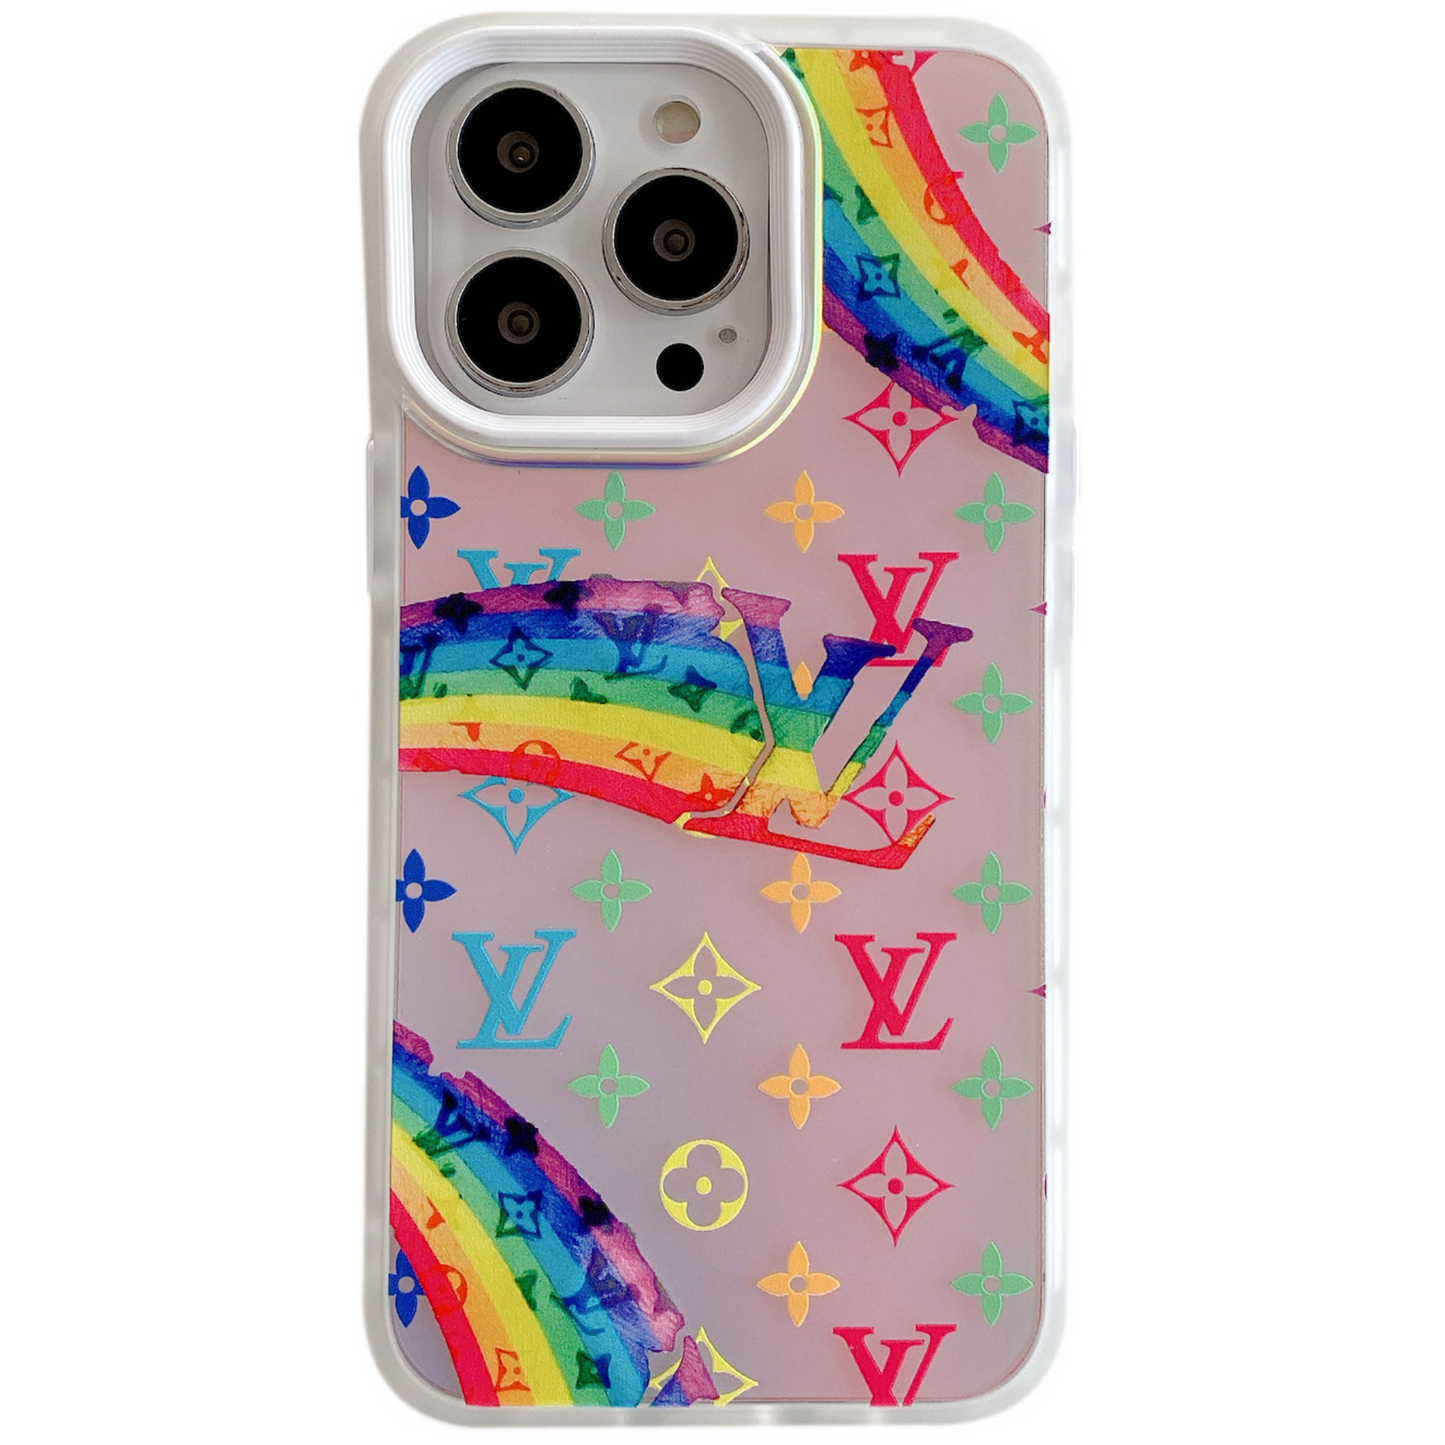 Feel the Rainbow iPhone Case